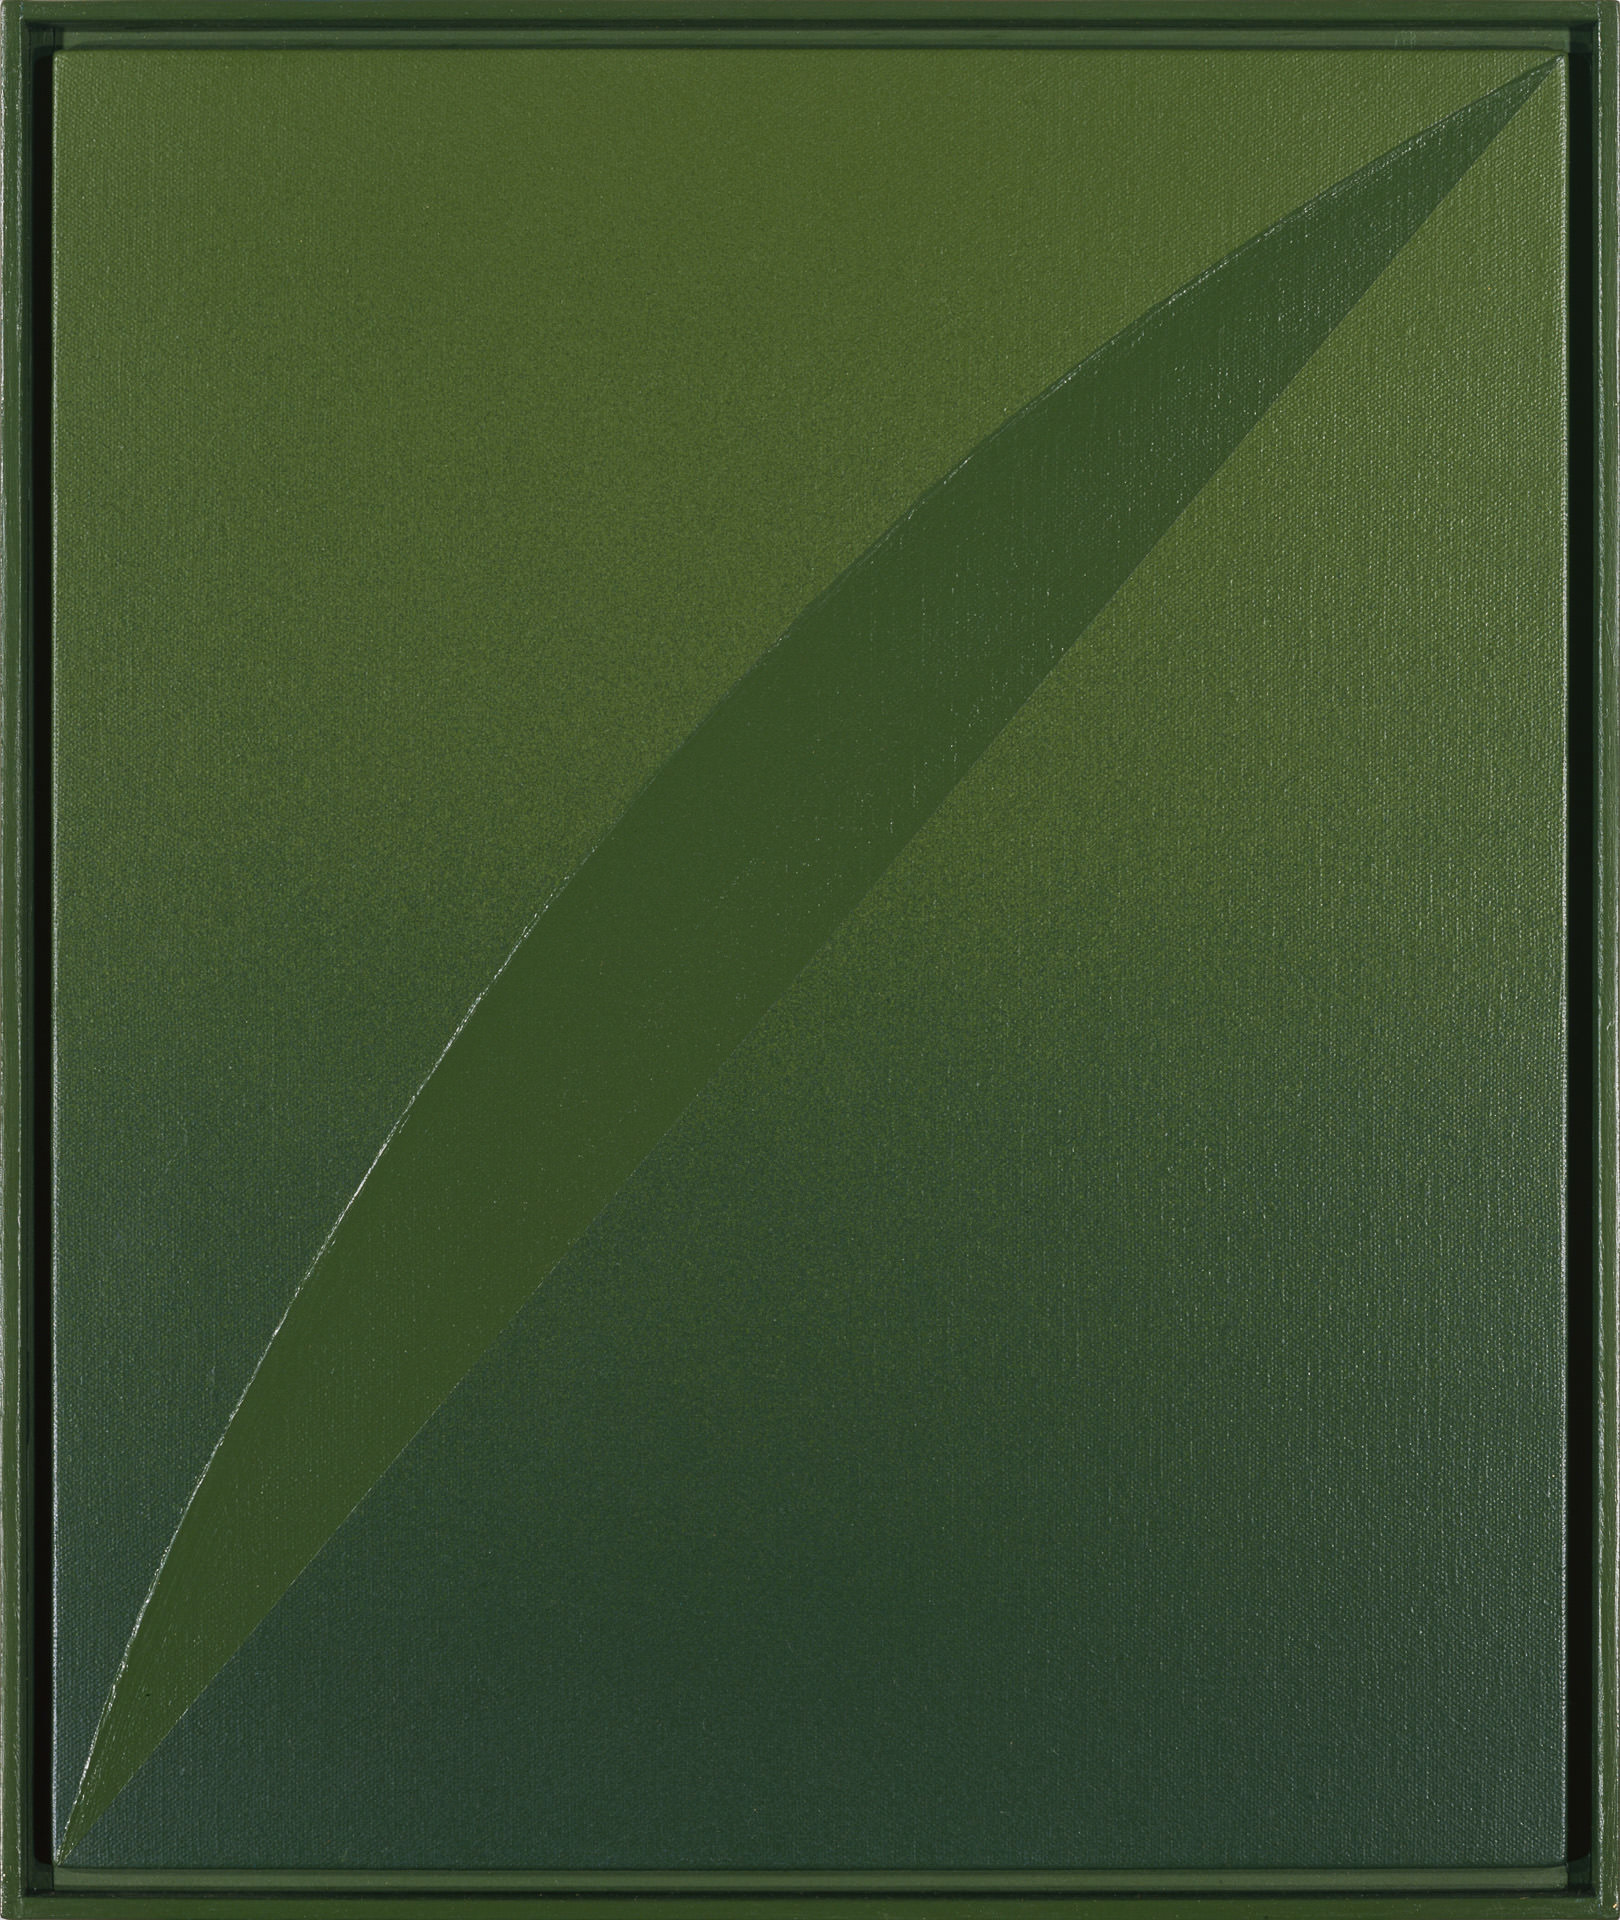 近藤竜男〈Arc: Green〉, アクリル・カンヴァス, 47.9×40.9, 1988